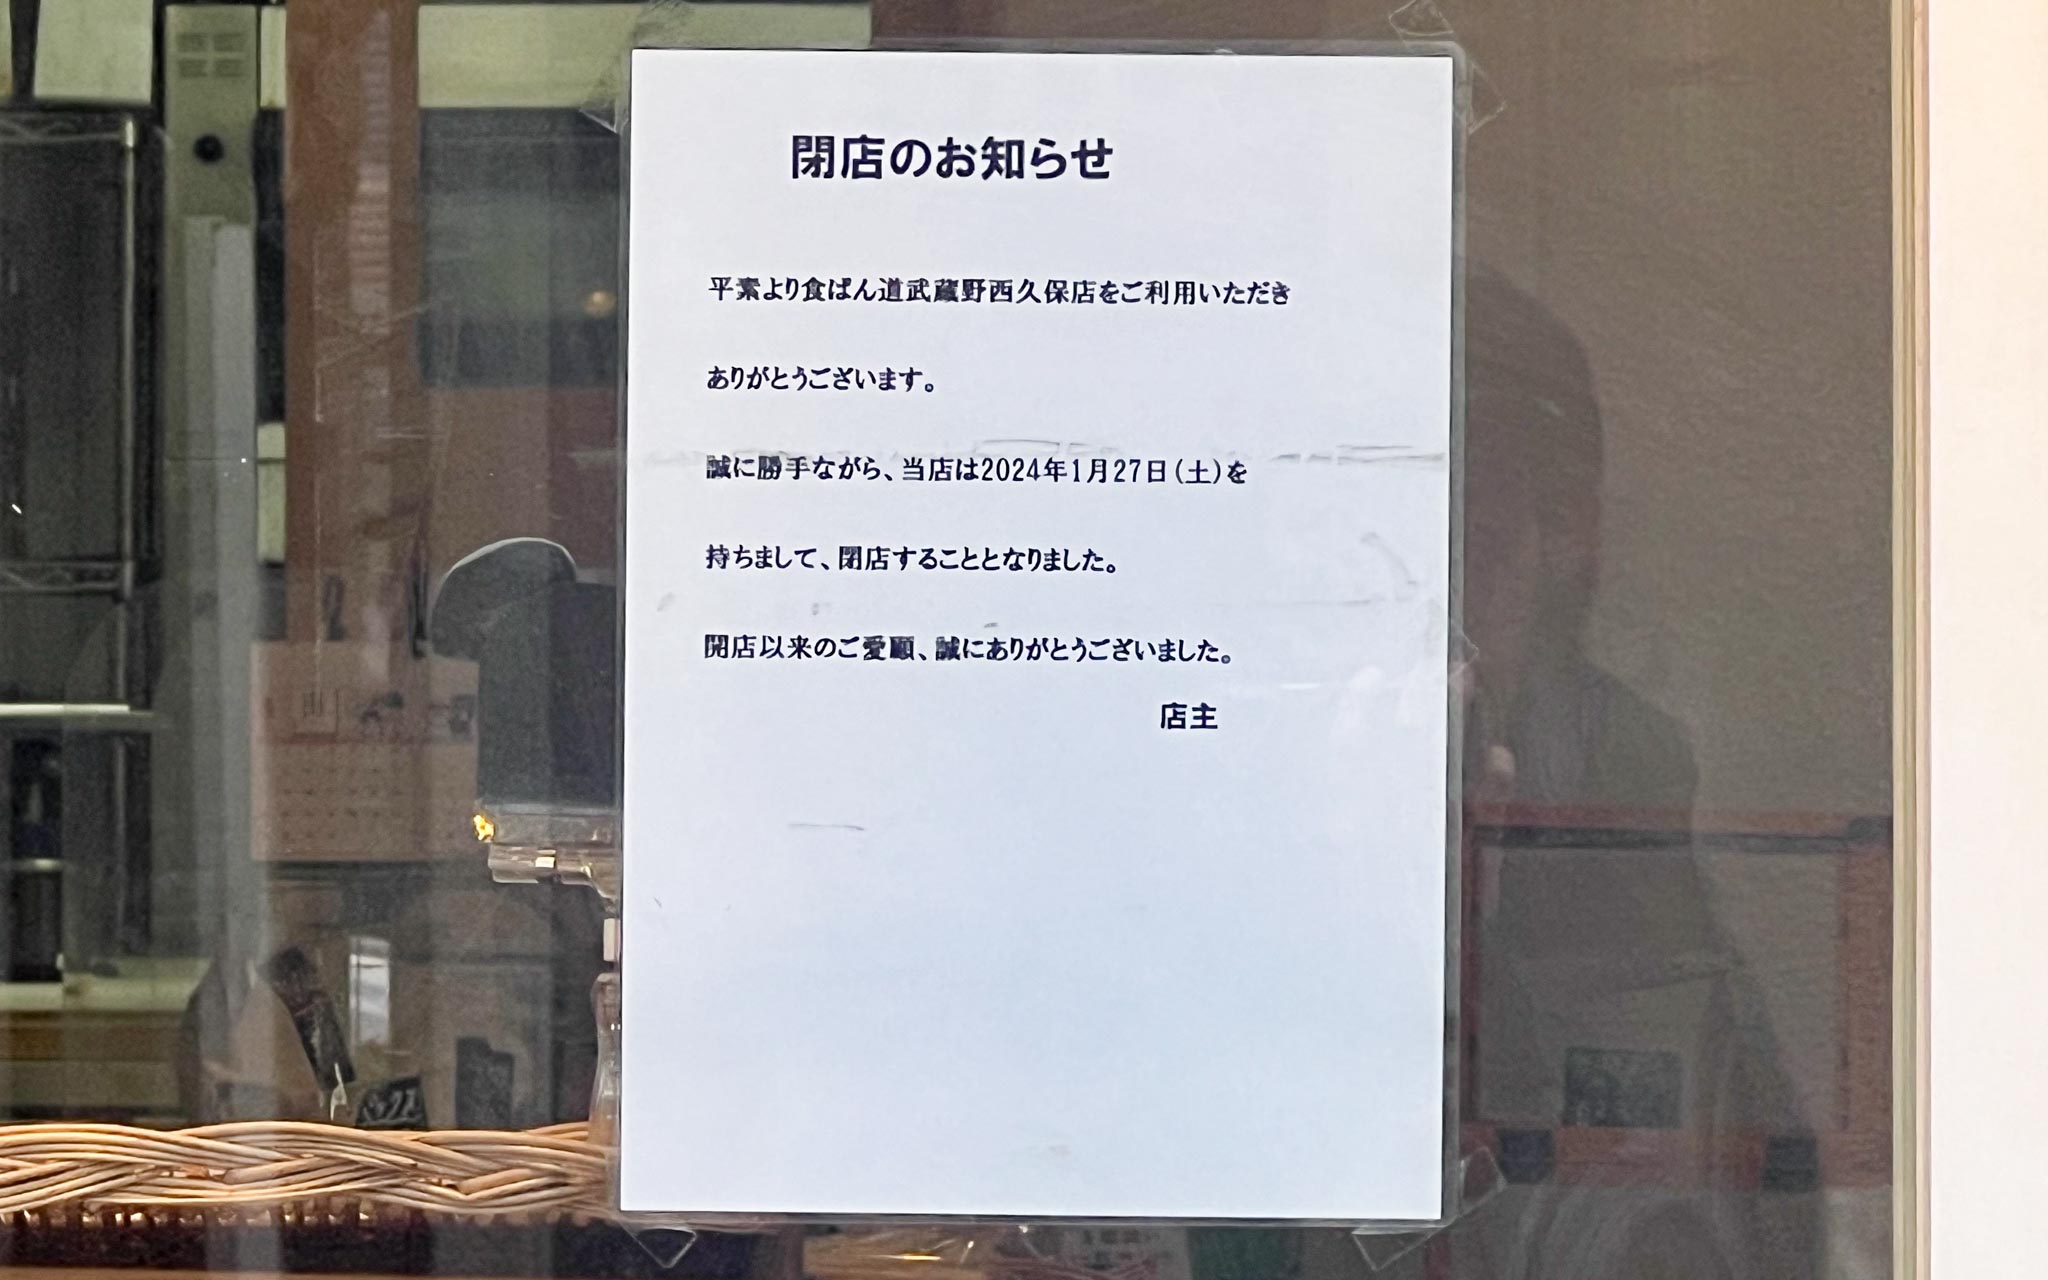 食ぱん道 武蔵野西久保店